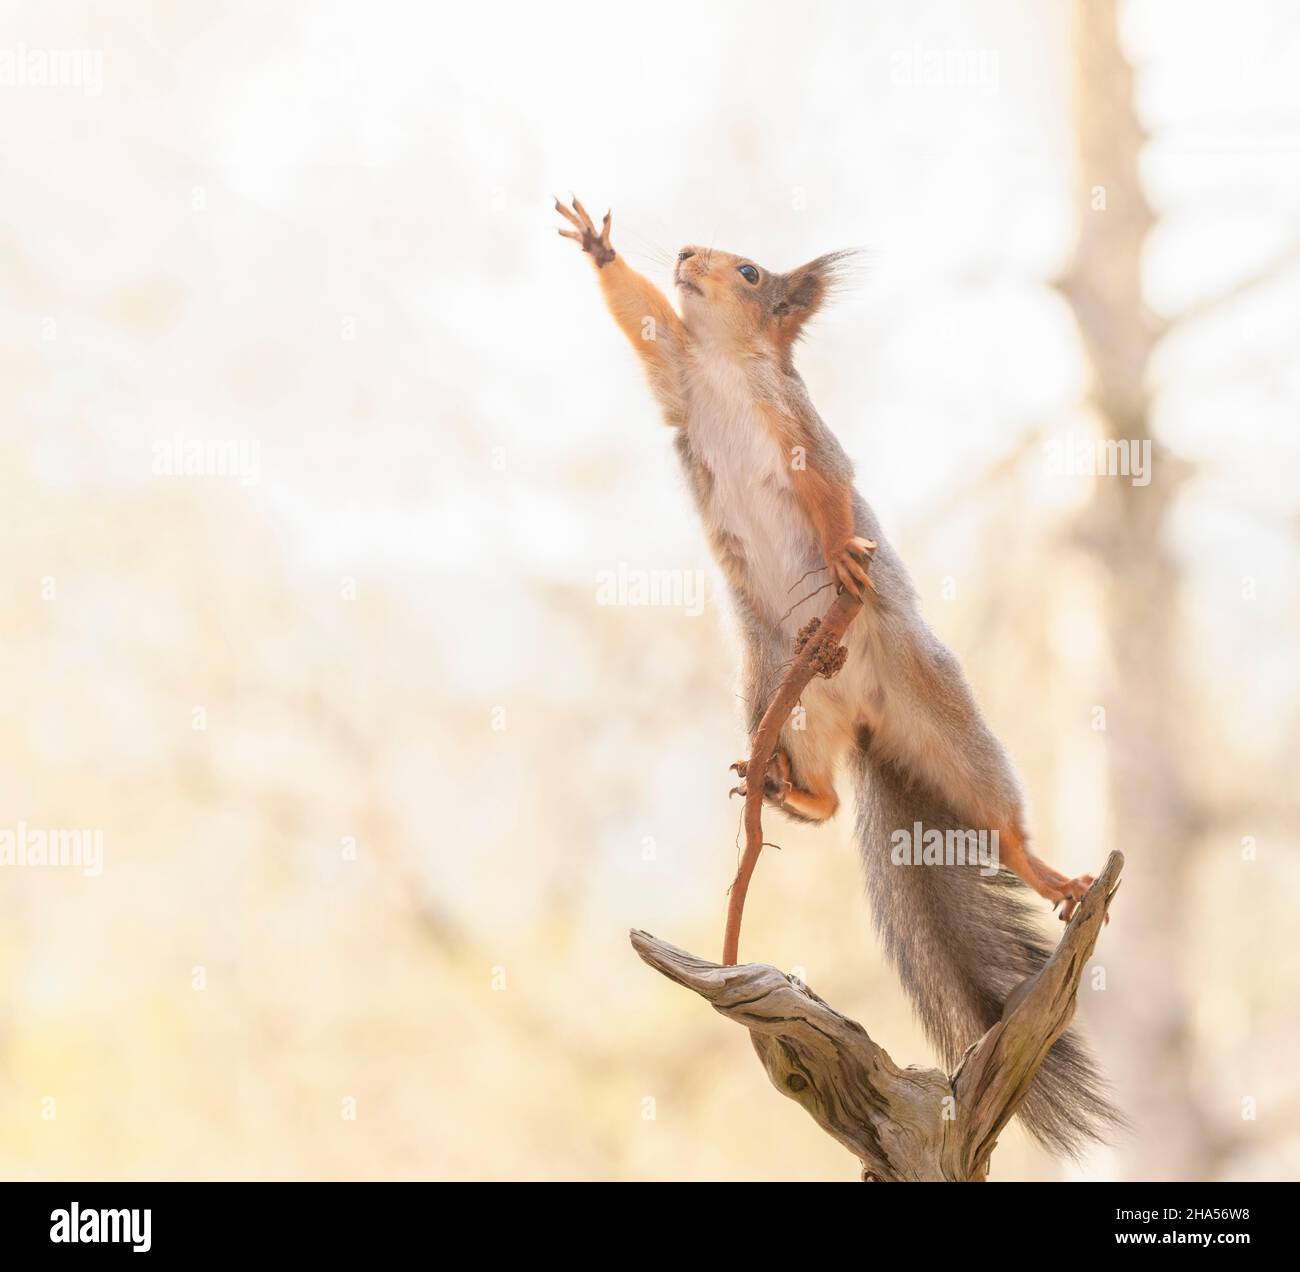 Rotes Eichhörnchen hält einen Spazierstock, der nach außen streckt Stockfoto